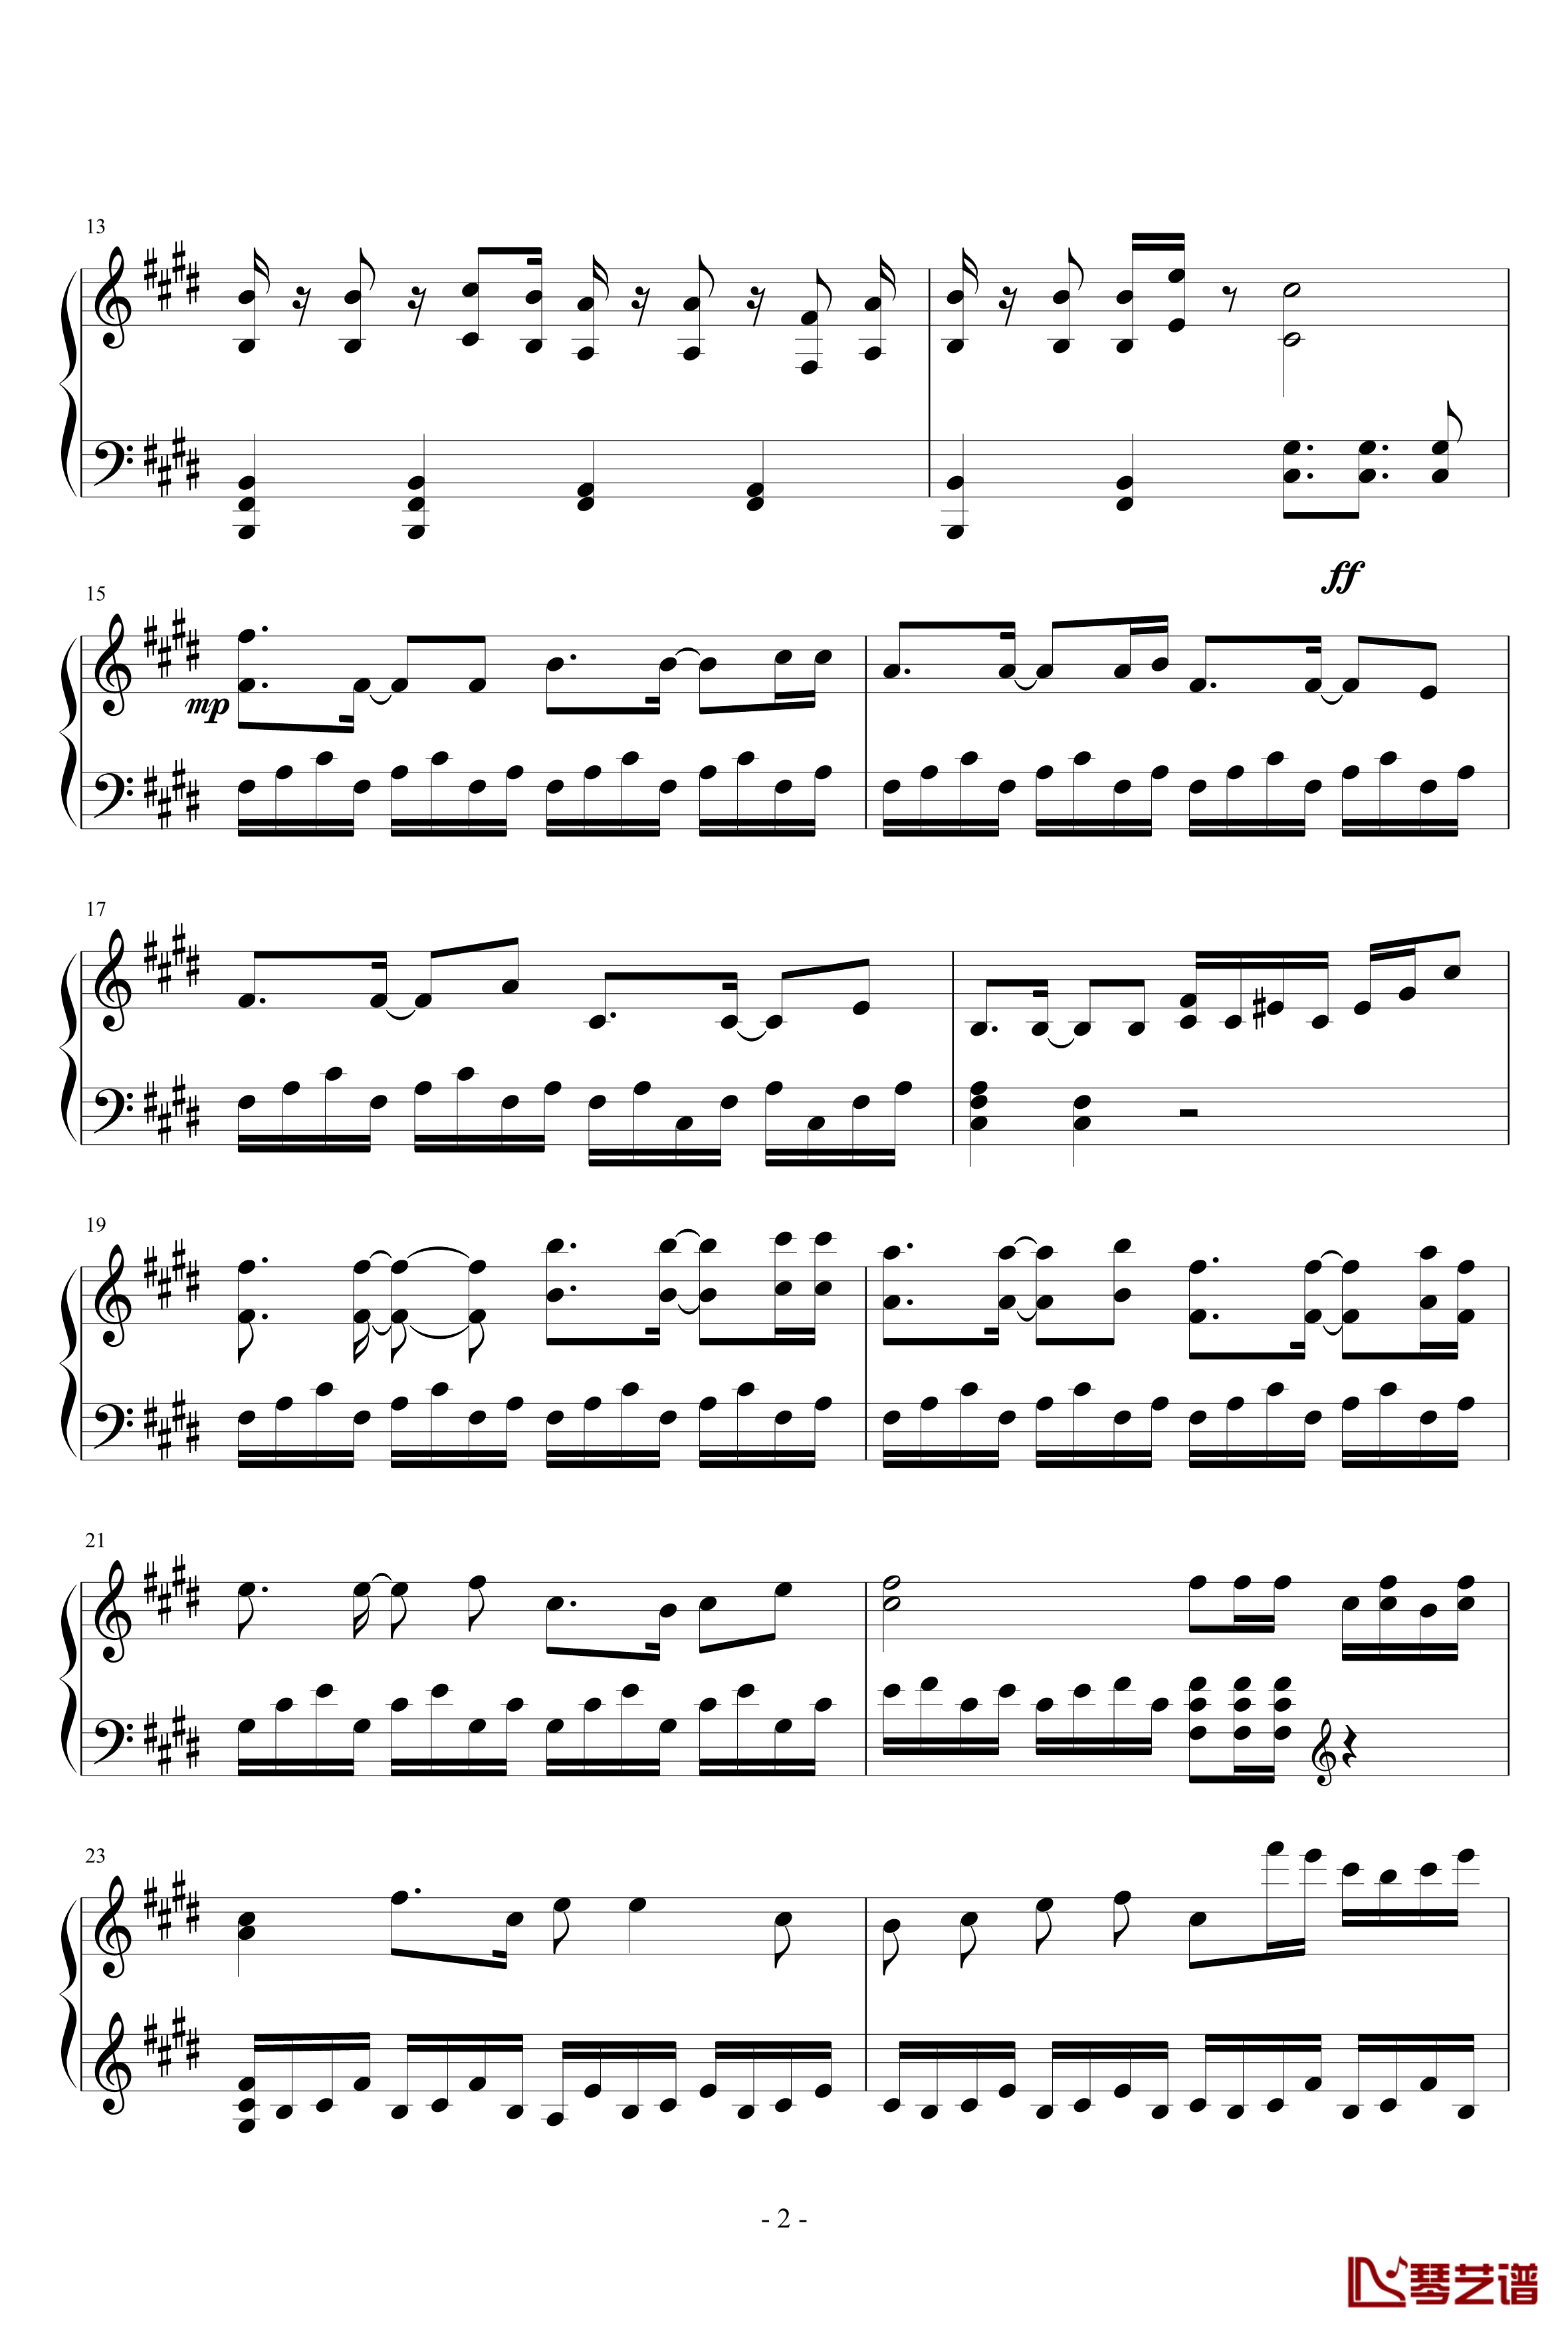 笑傲江湖钢琴谱-2012改版，完全钢琴可演奏，7级2